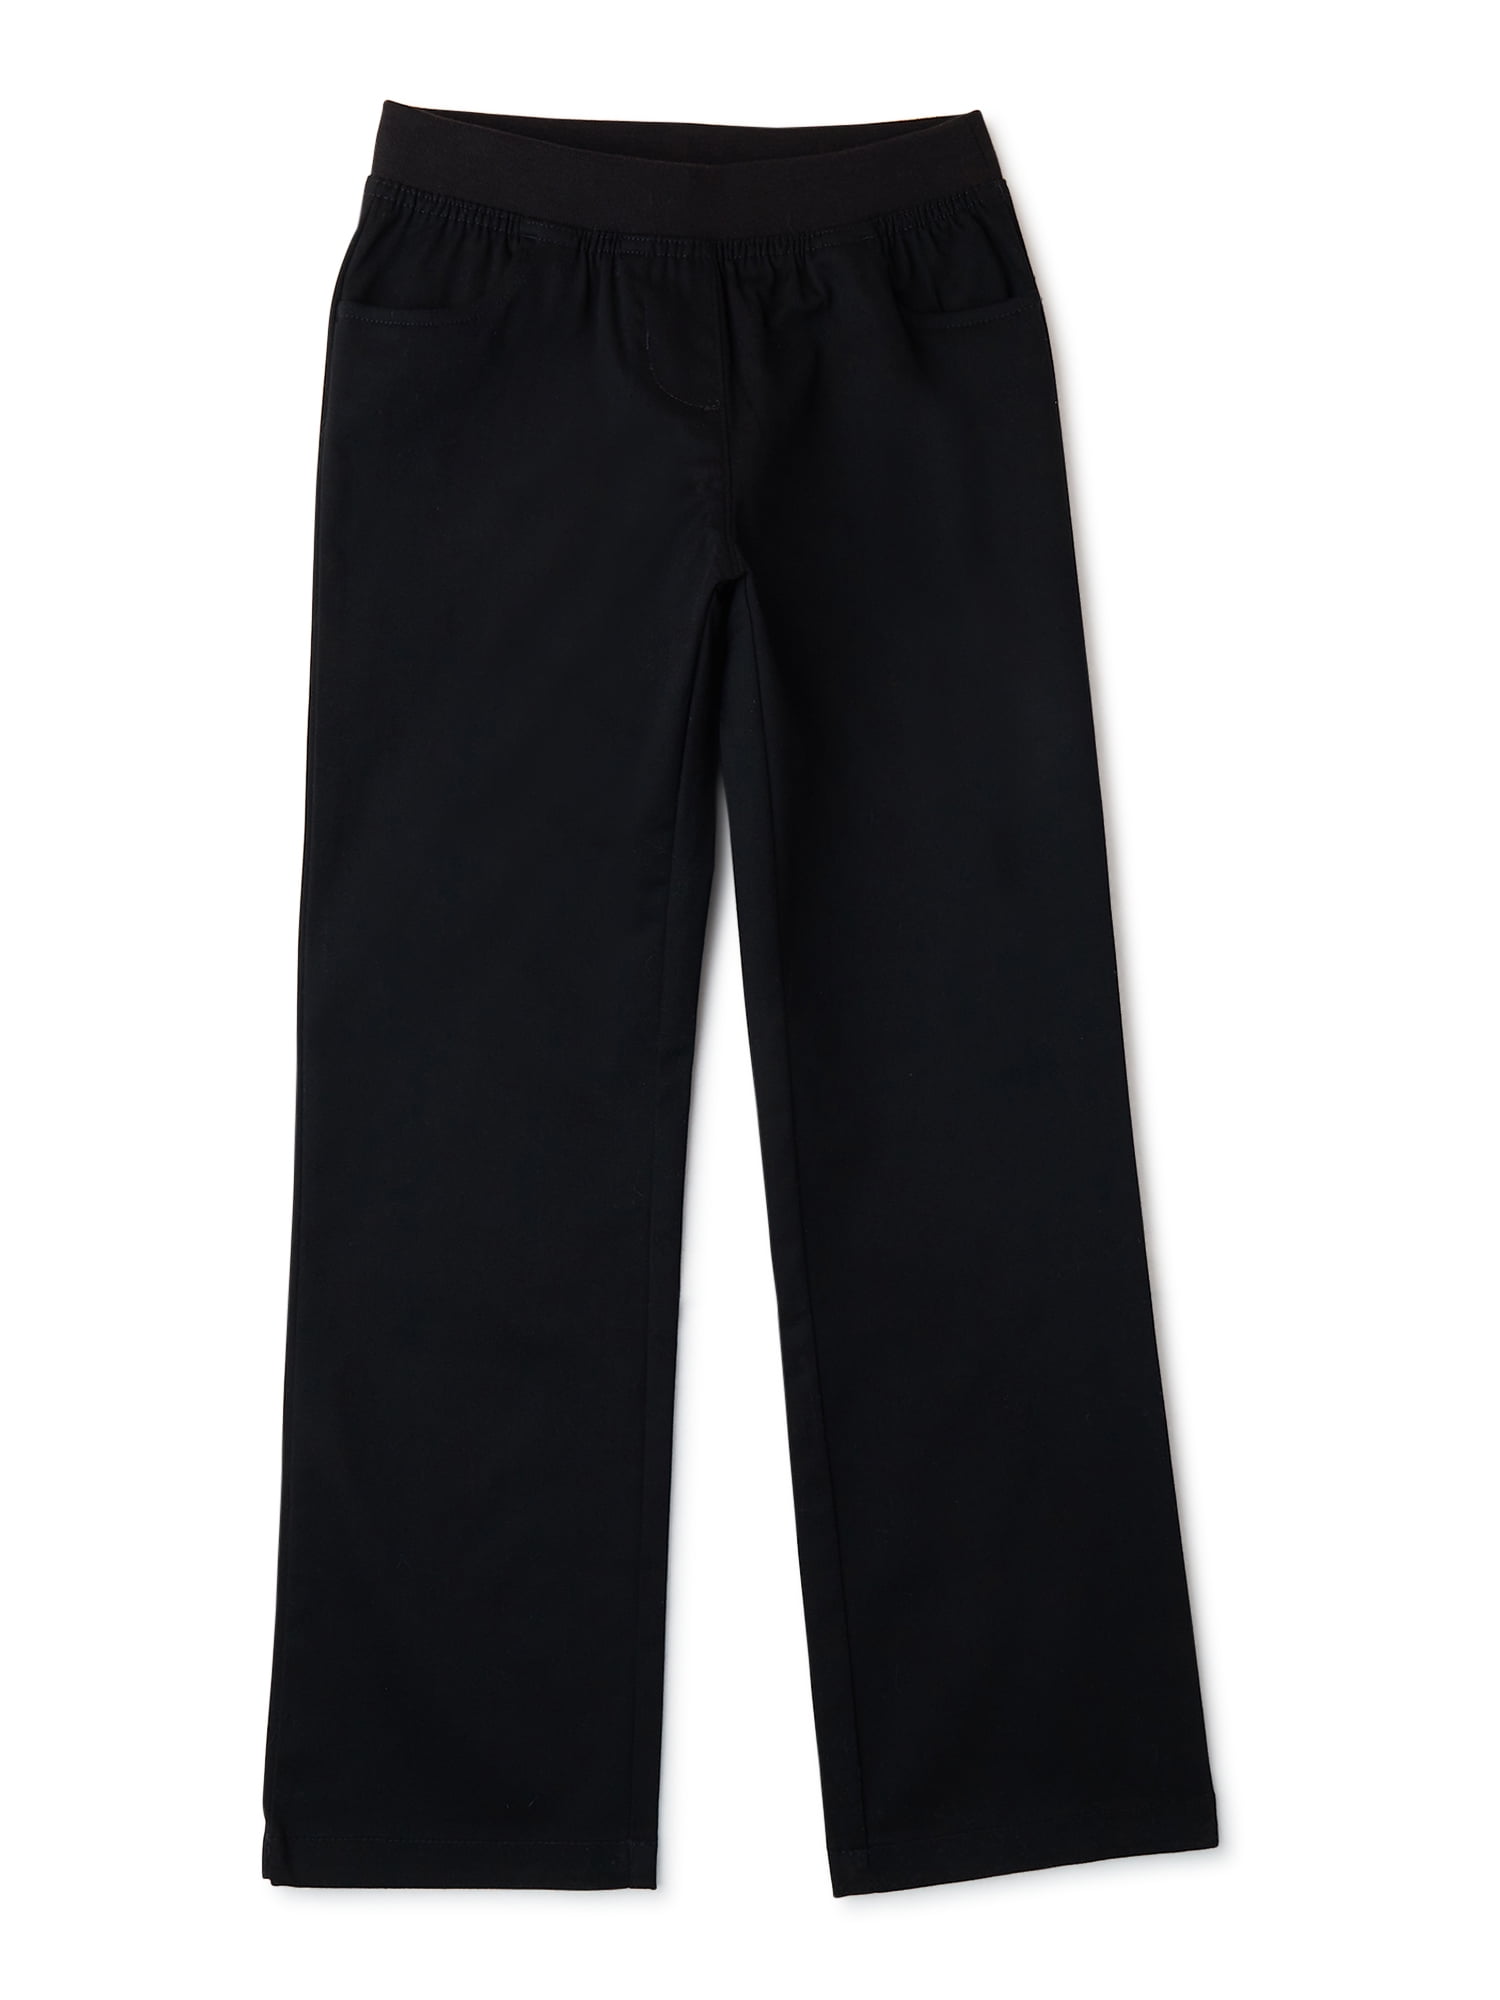 Listers Schoolwear Plus Size Girls School Trousers Black School Uniform |  eBay